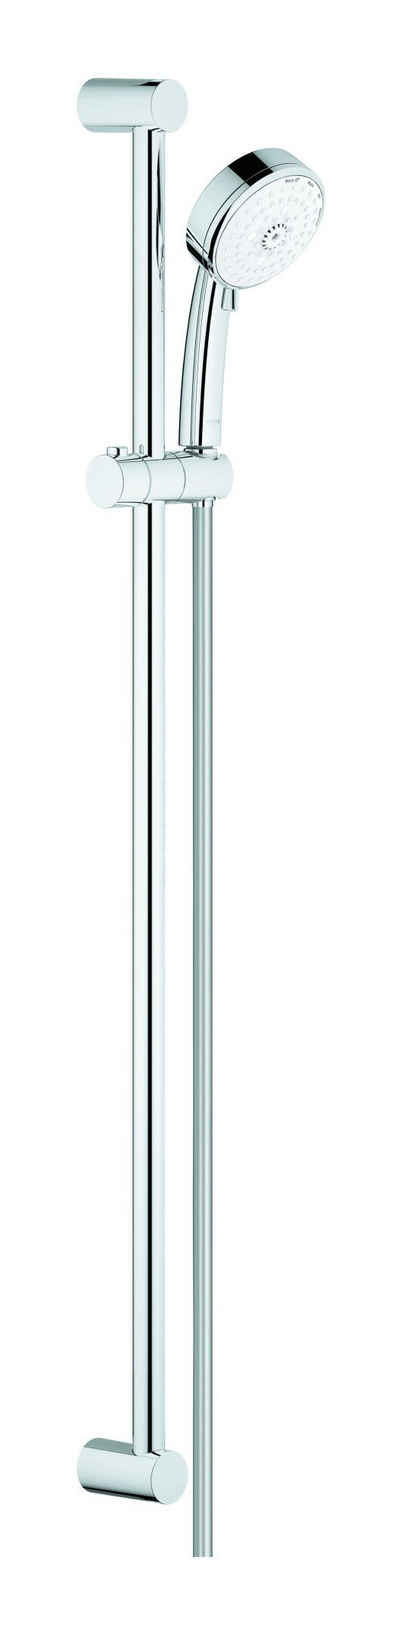 Grohe Stangenbrause-Set Tempesta Cosmopolitan 100, Höhe 92 cm, 4 Strahlart(en), Brausestangenset - Chrom